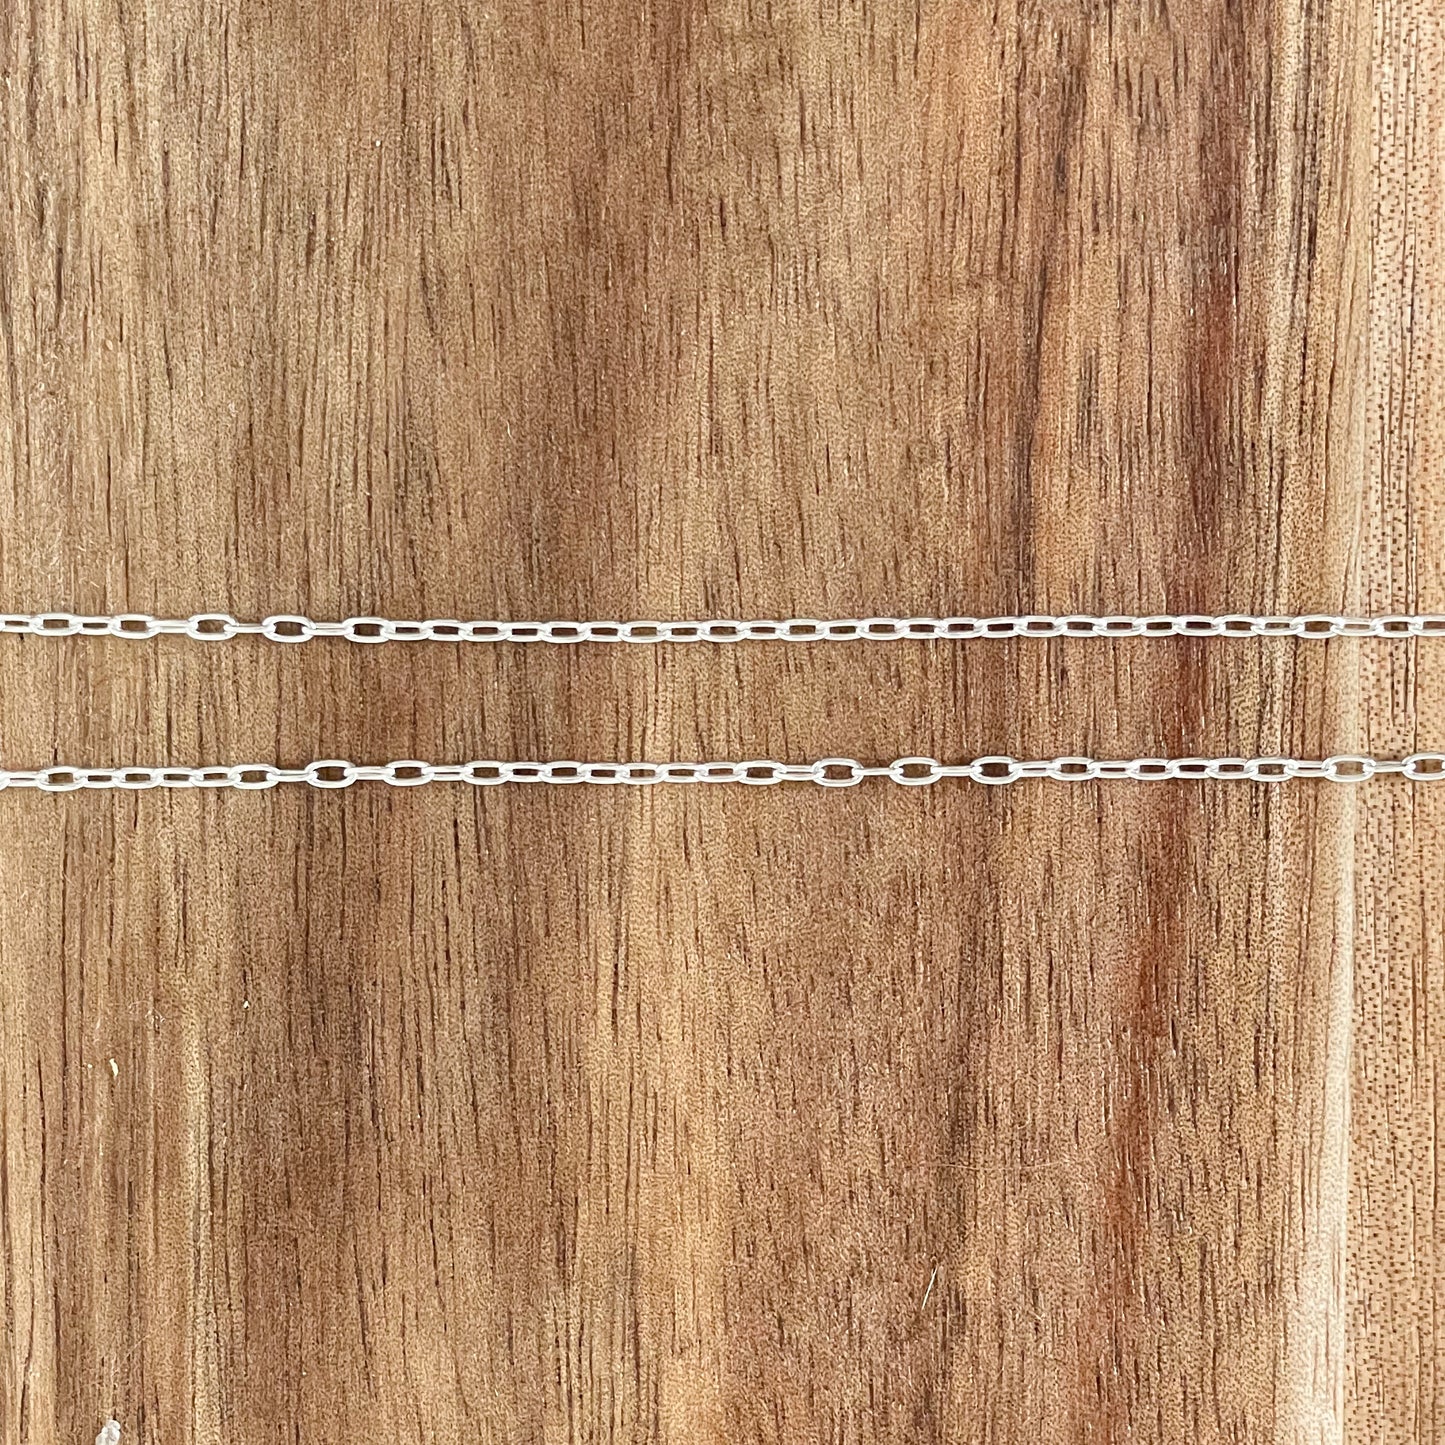 Silver Mini Paperclip Chain